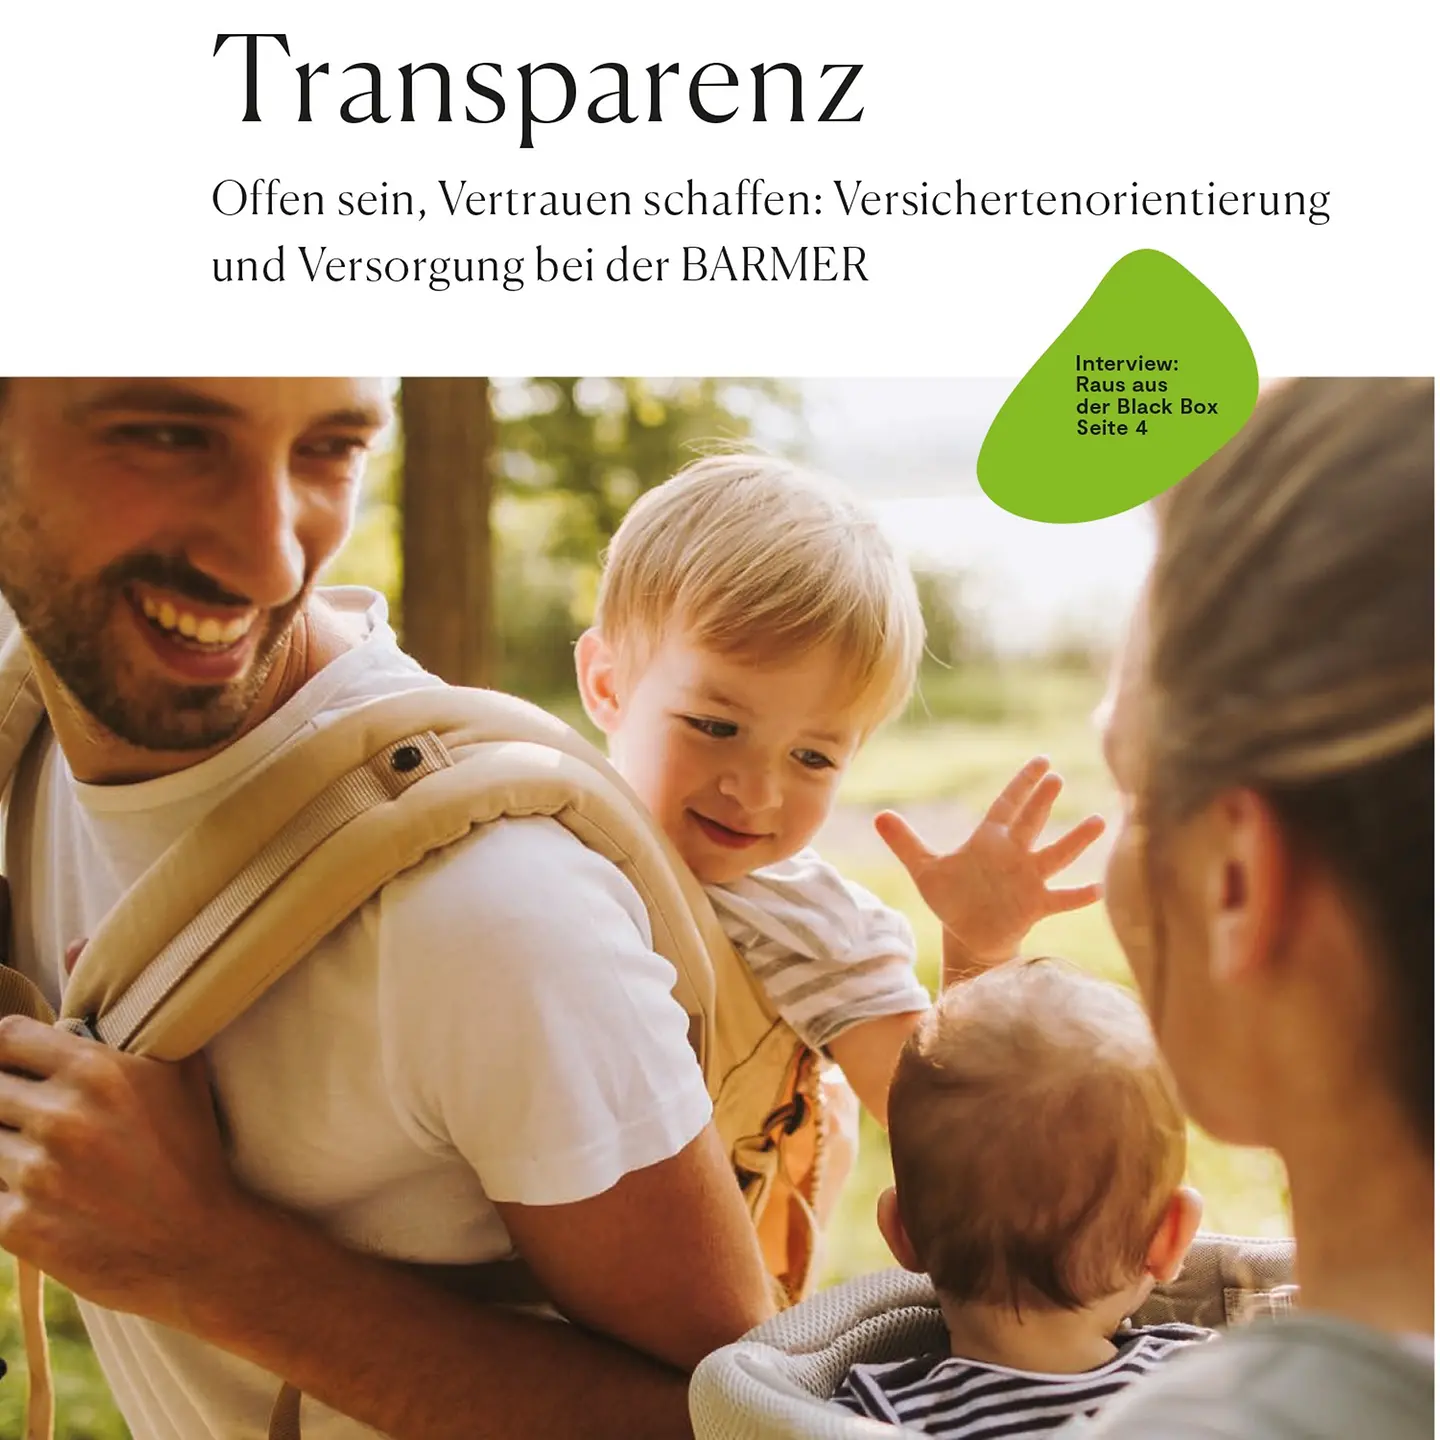 Titelbild des Barmer Transparenzberichts, eine junge Familie draußen im Freien.